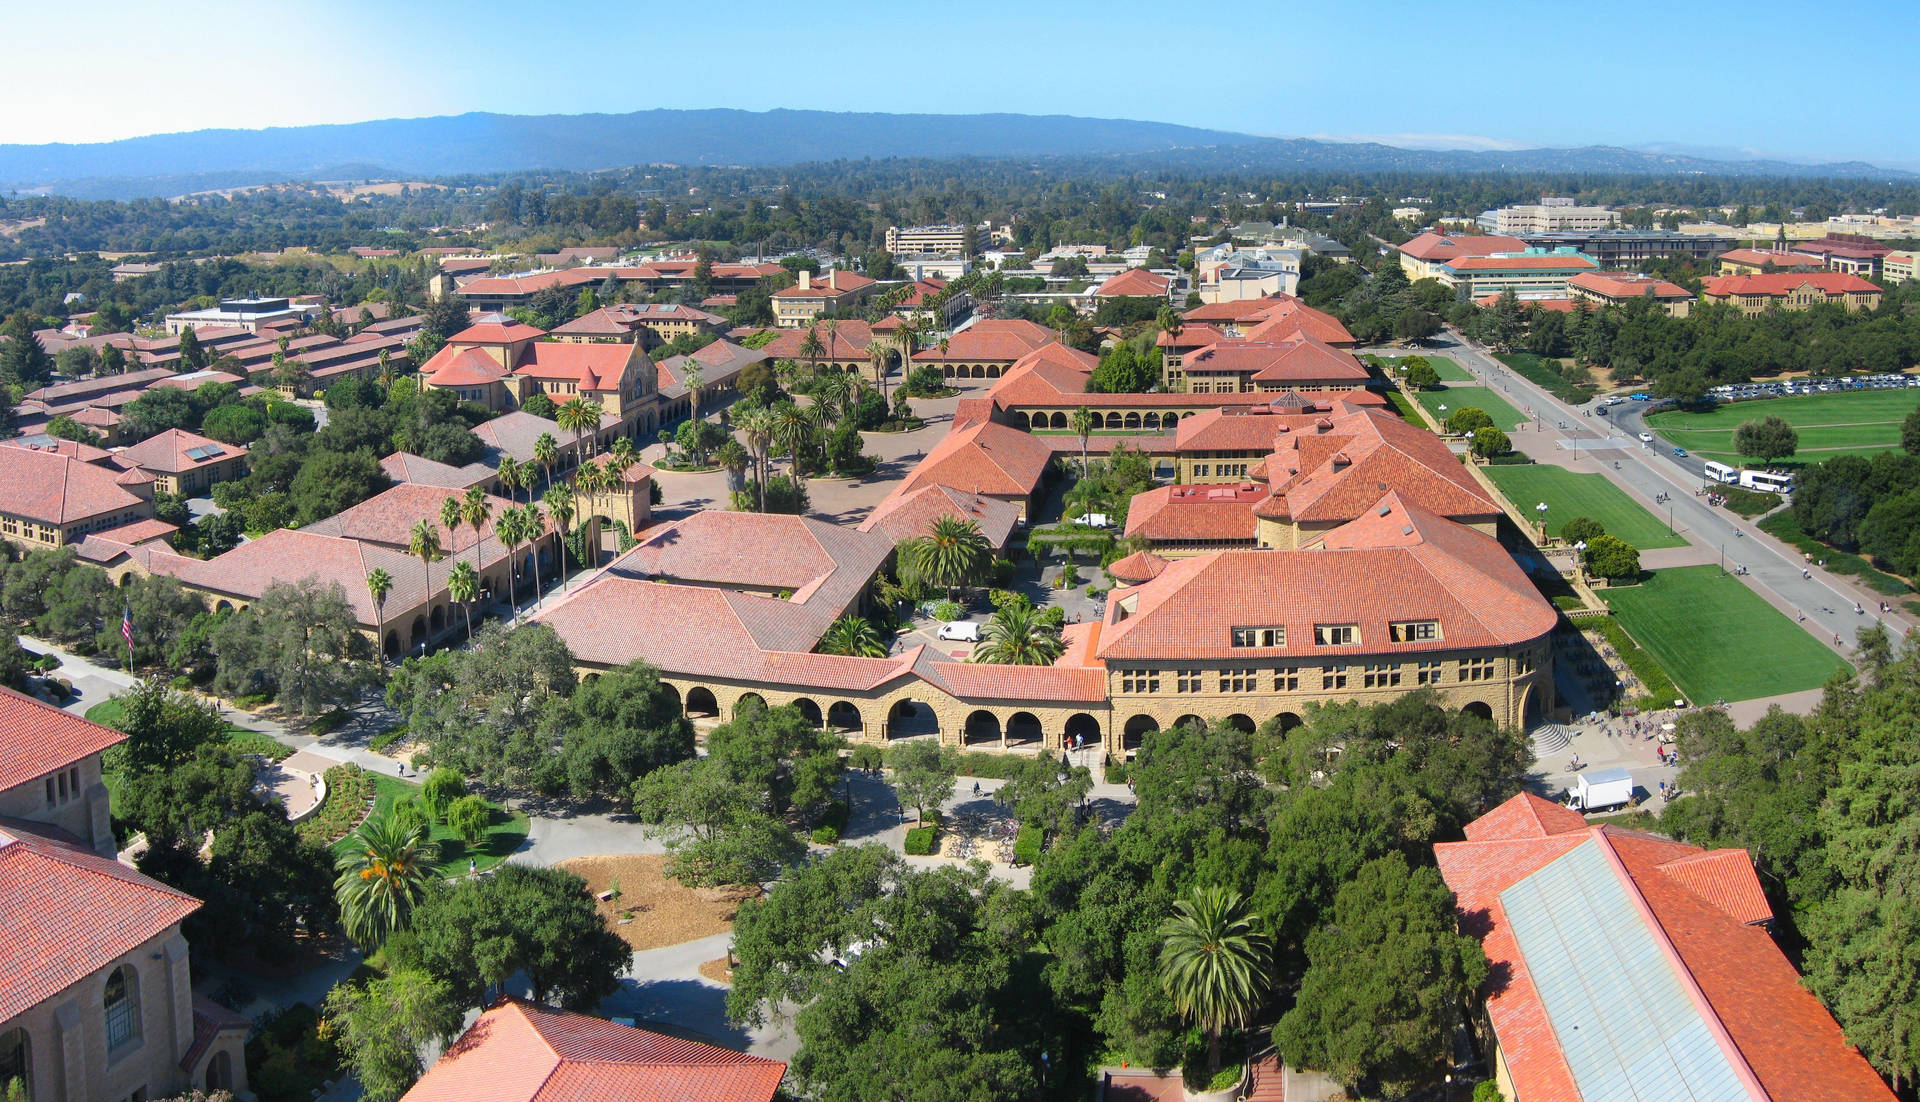 Vistaaérea Del Campus De La Universidad De Stanford Fondo de pantalla